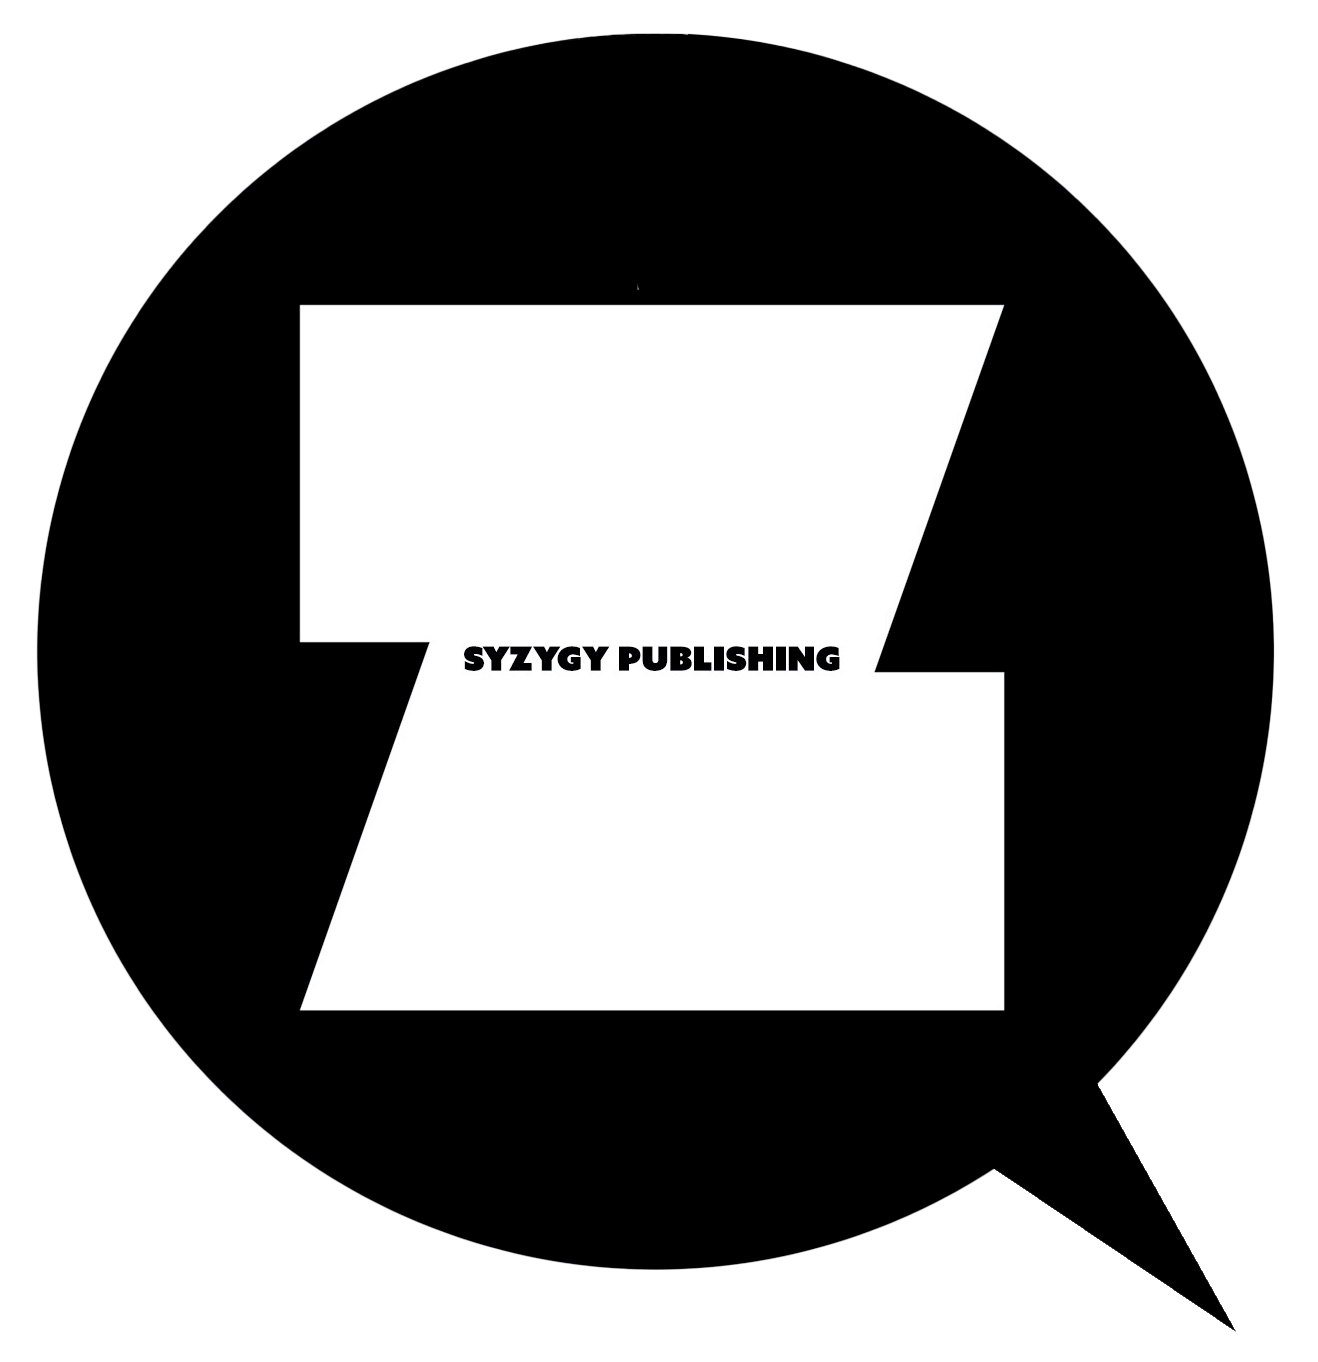 Syz logo crop 2-21